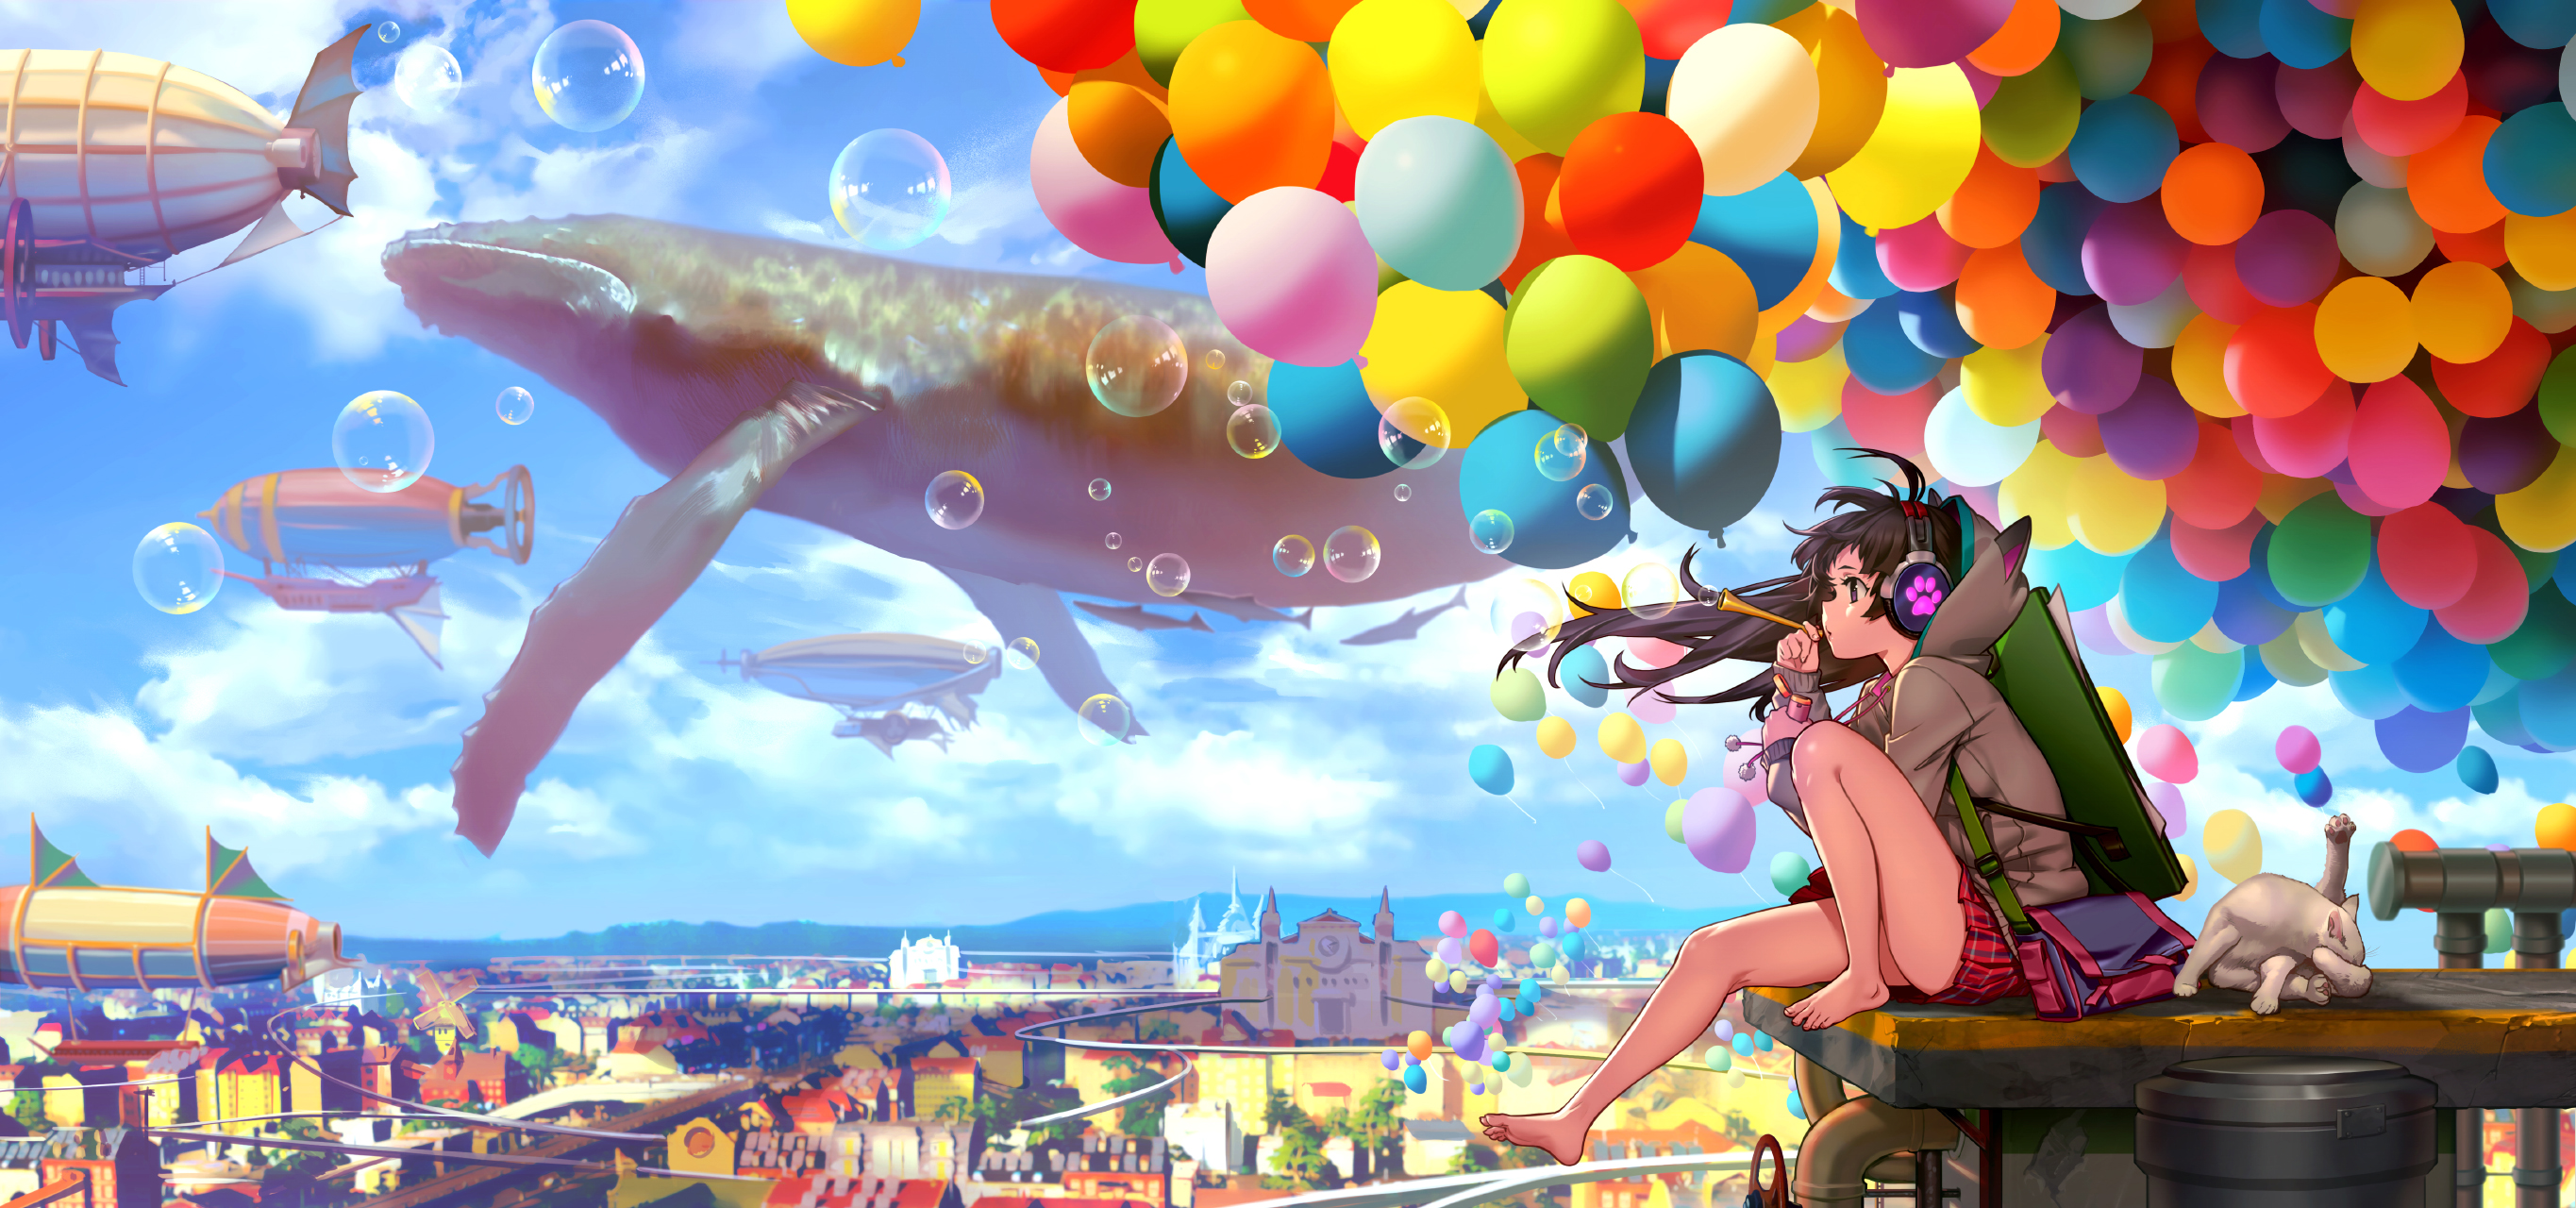 let's anime: THE FLYING PHANTOM SHIP